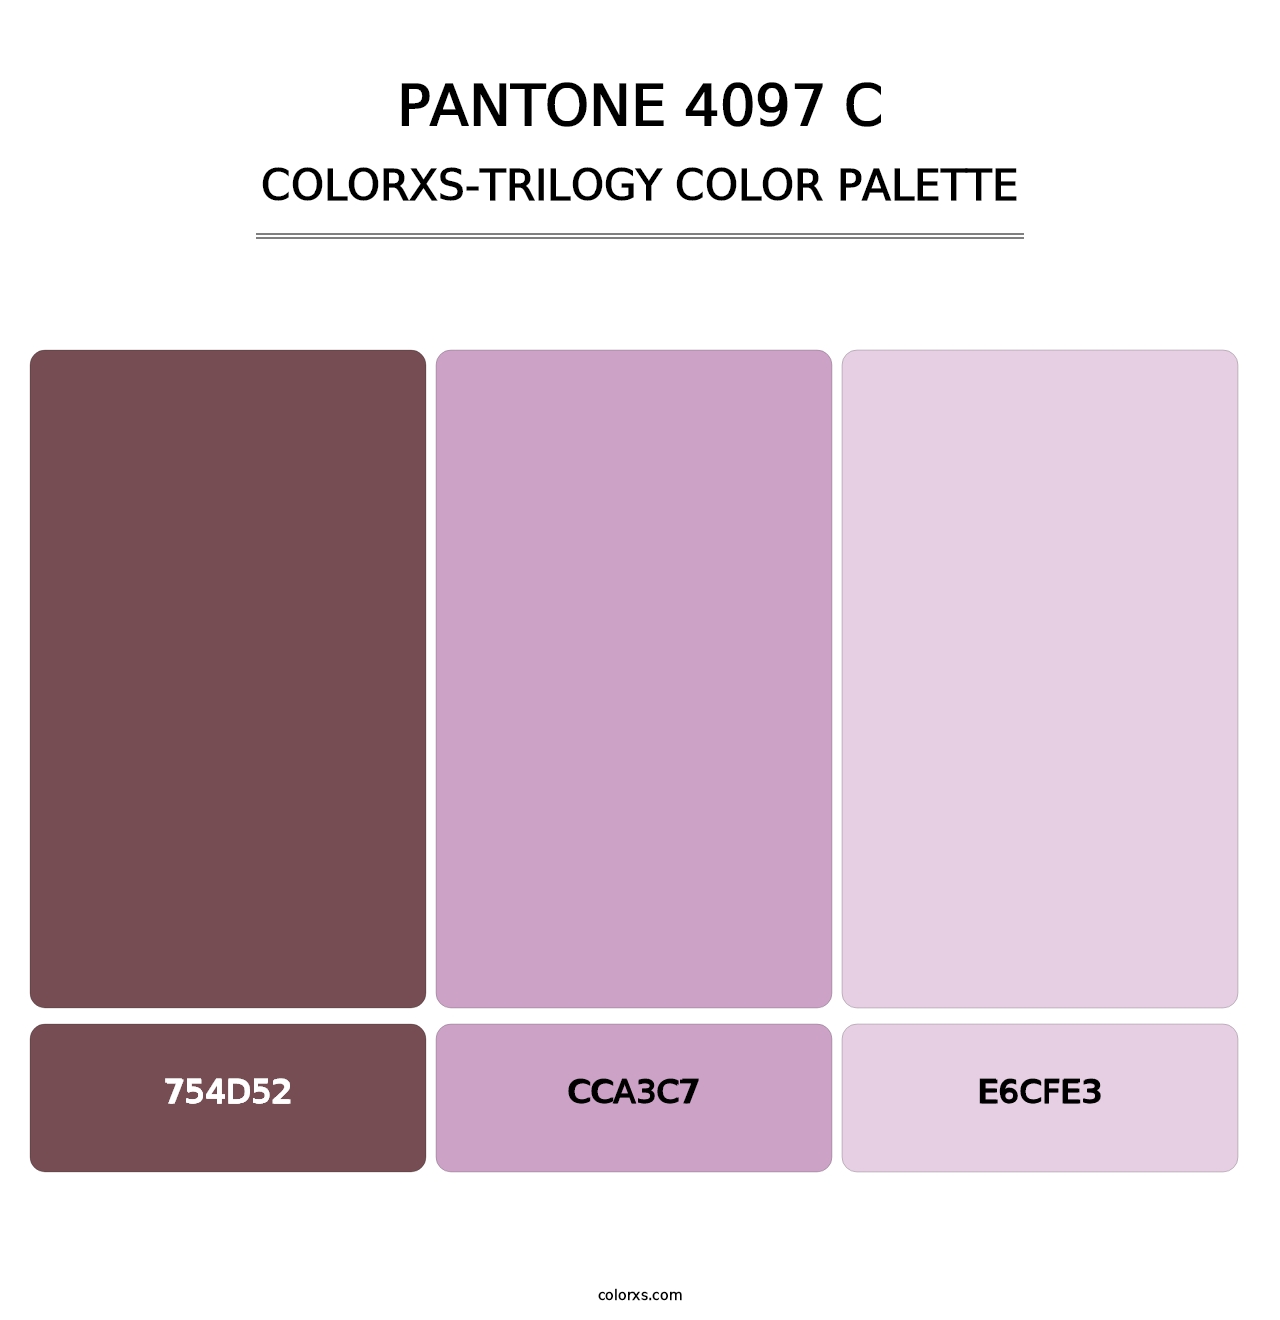 PANTONE 4097 C - Colorxs Trilogy Palette